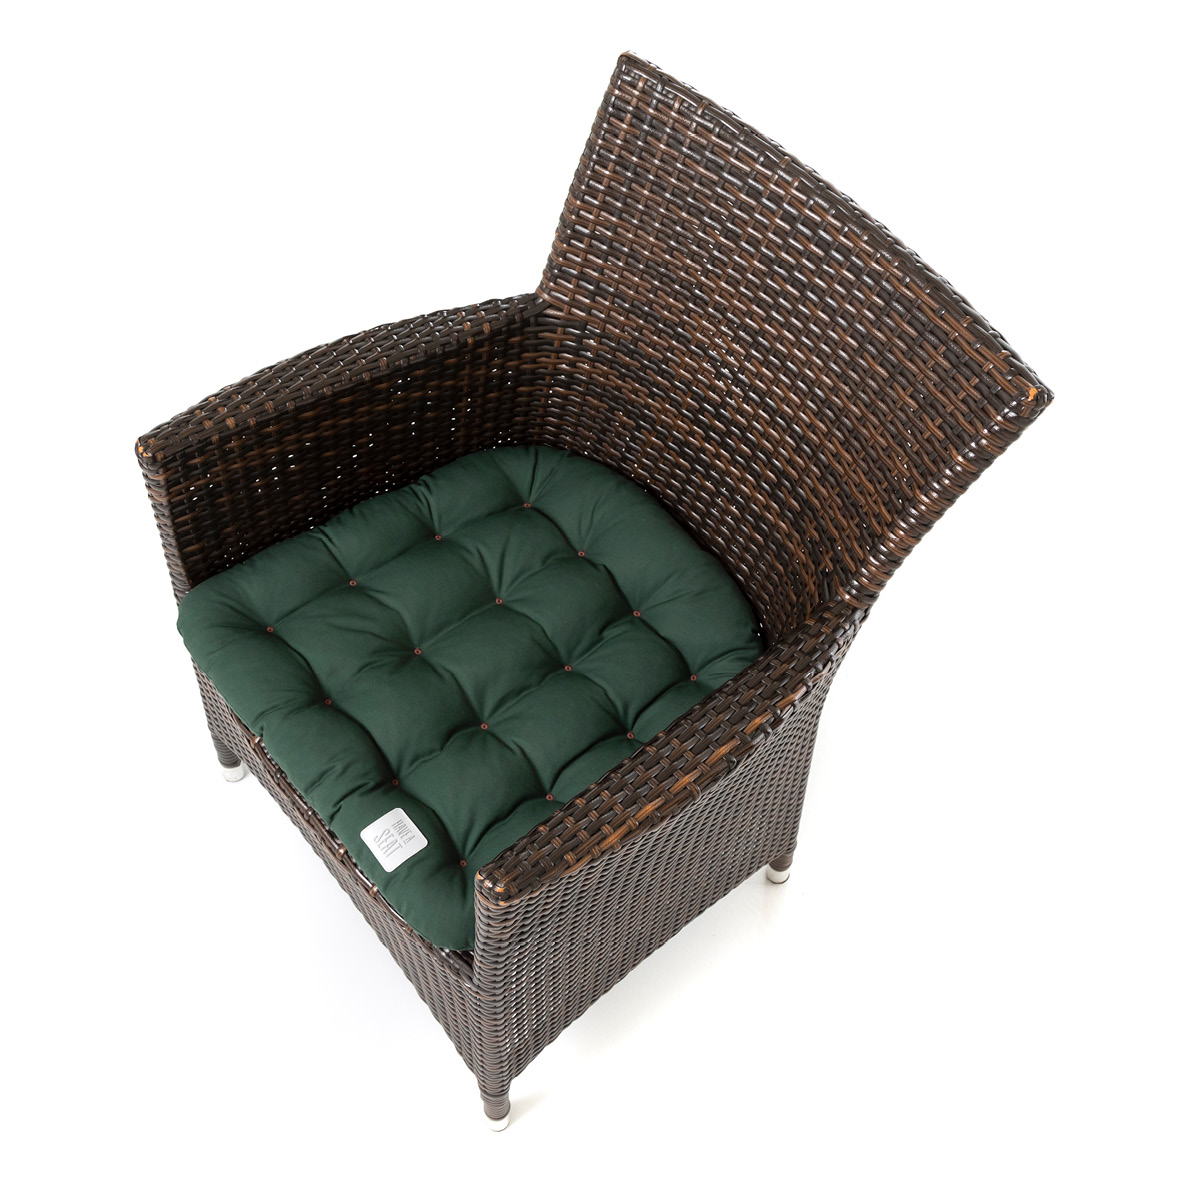 Dunkelgrünes Sitzkissen trapez /konisch mit abgerundeten Ecken, optimale Passform für einen Rattanstuhl / Rattansessel | HAVE A SEAT Living